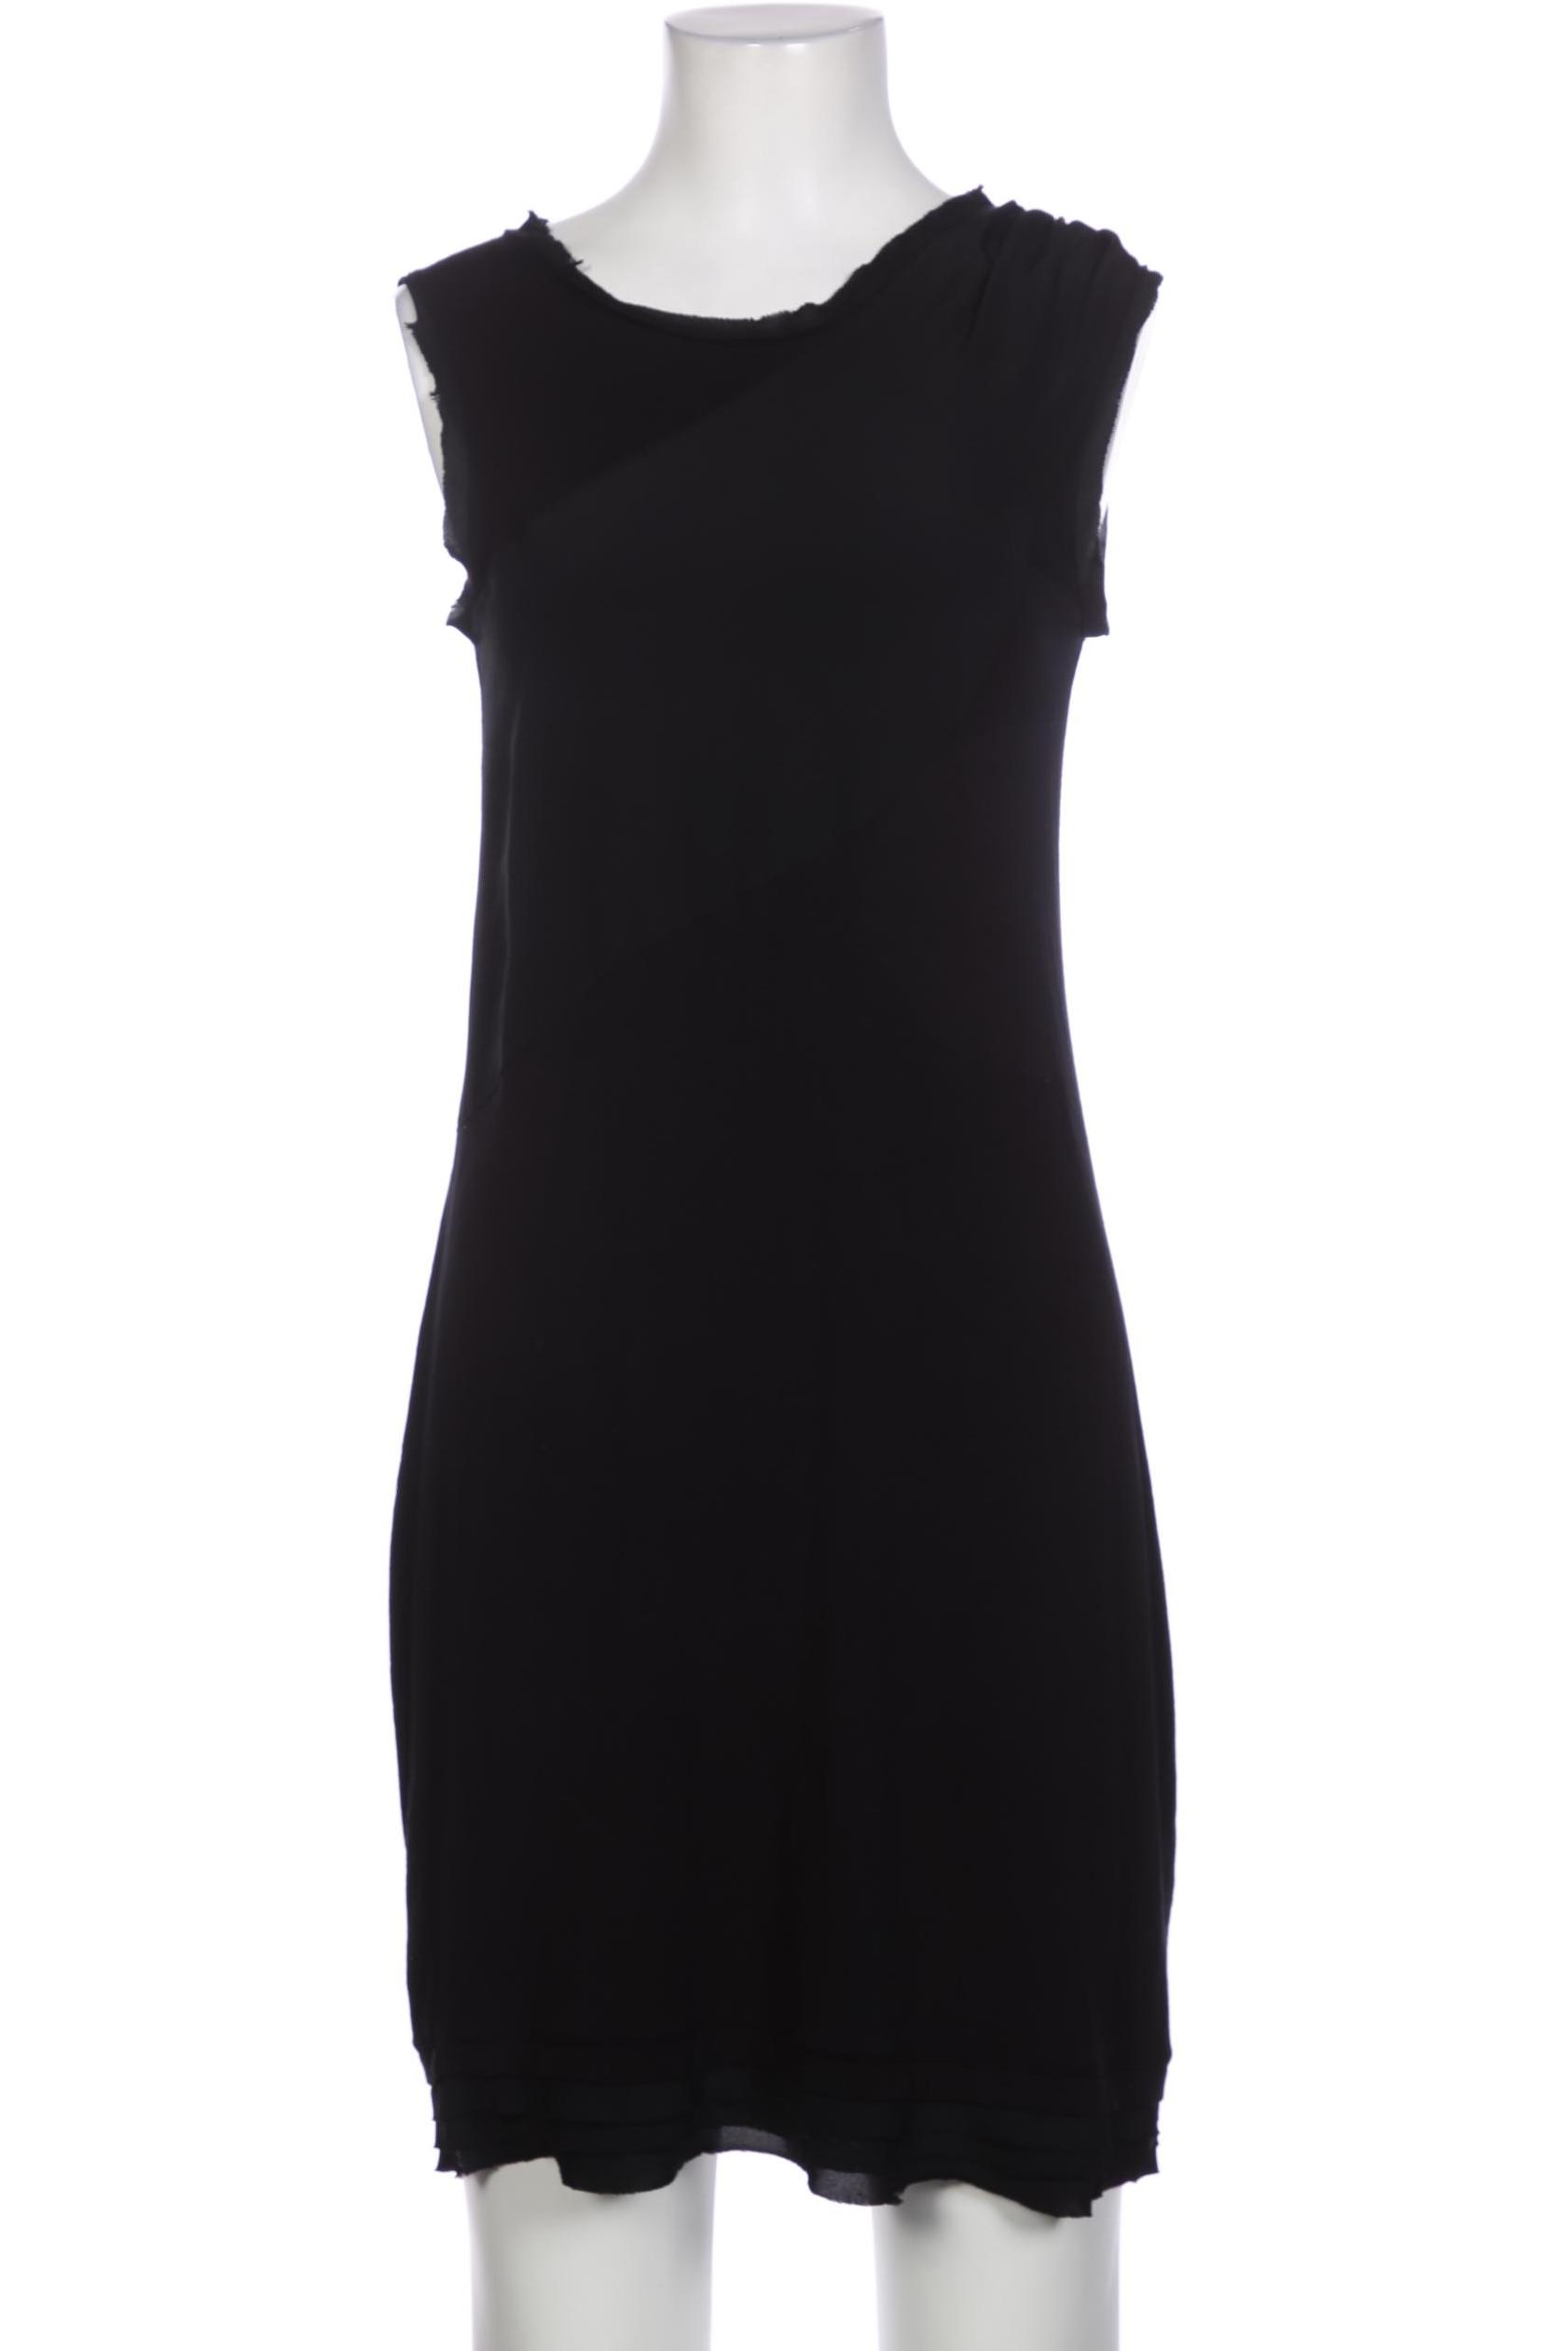 Zero Damen Kleid, schwarz, Gr. 36 von Zero